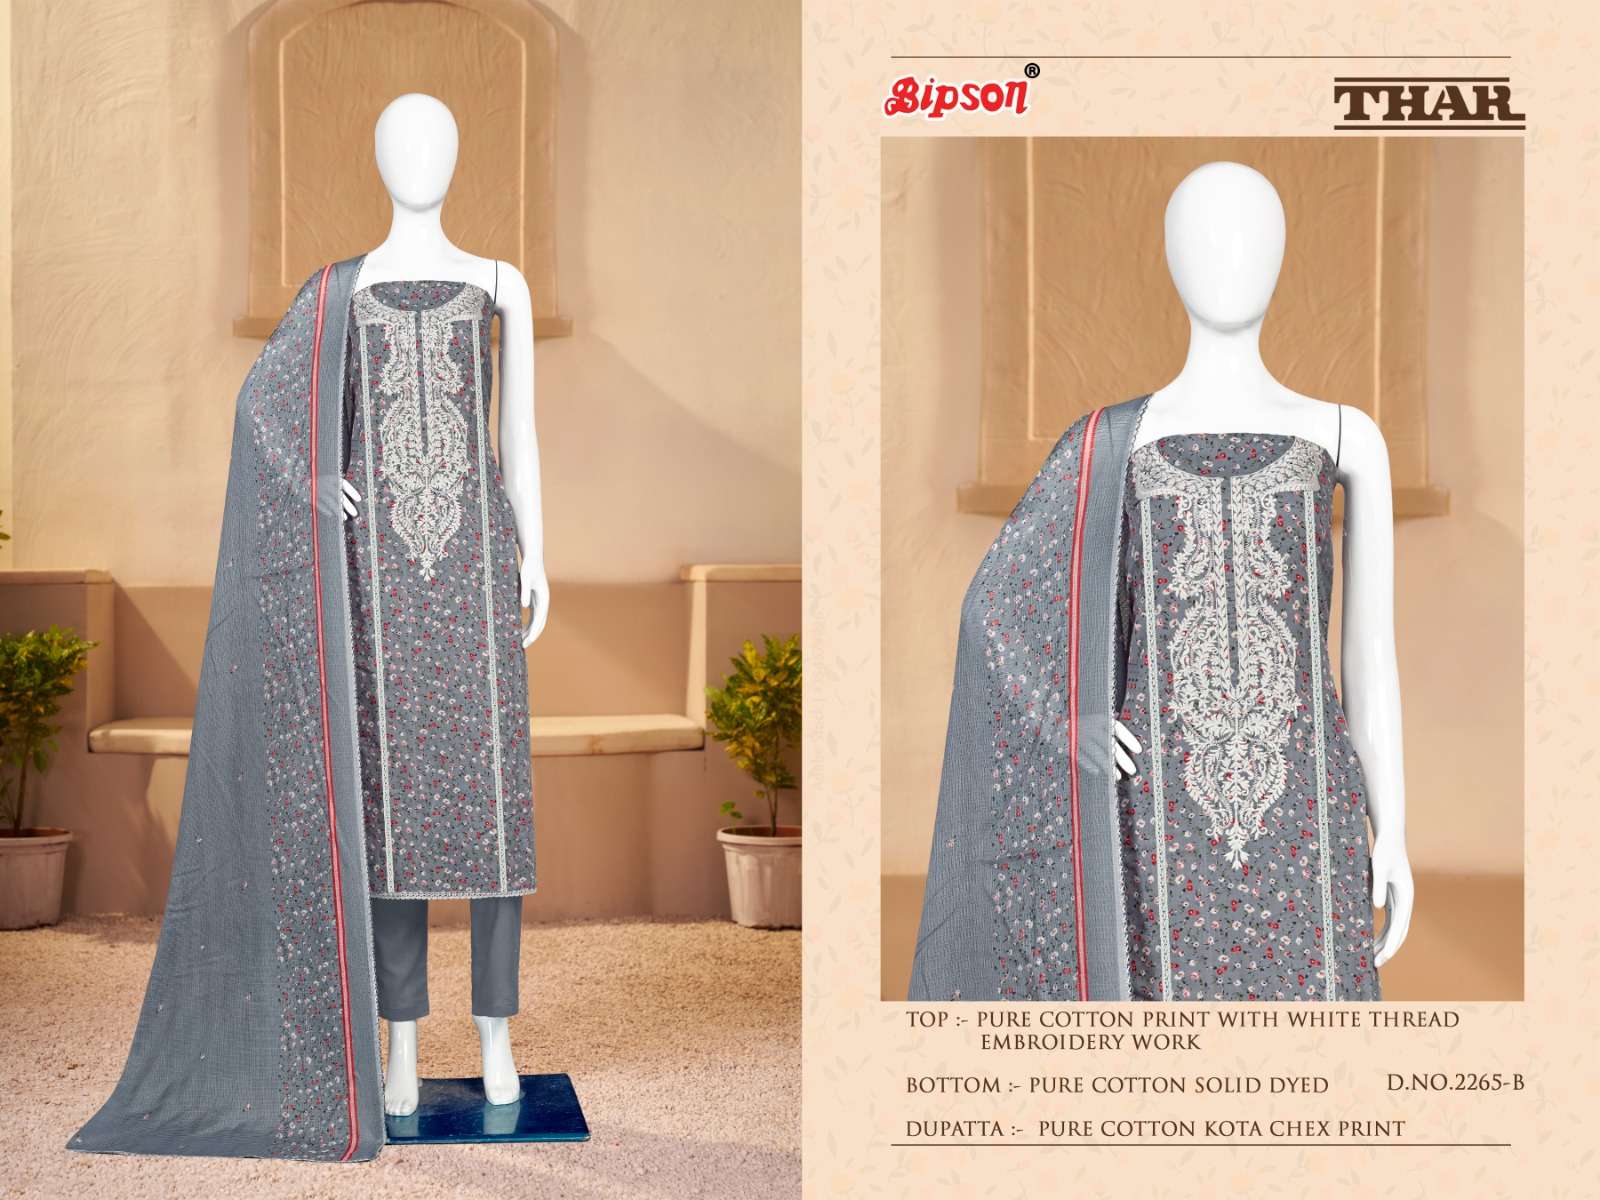 bipson prints thar 2265 series unstich designer salwar suits catalogue wholesale price surat